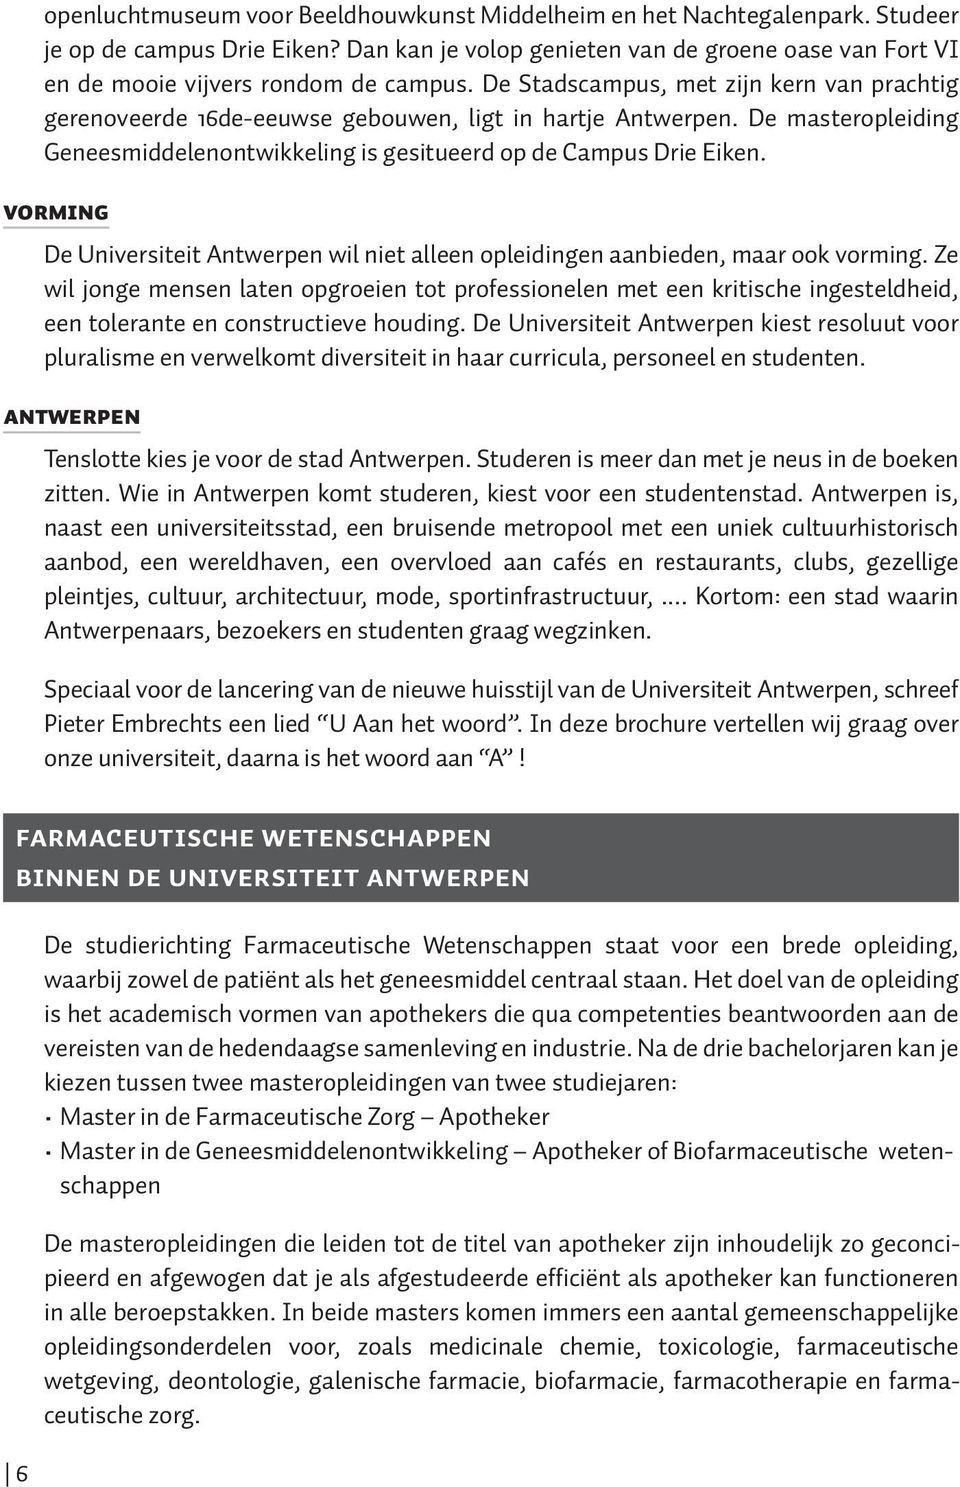 De masteropleiding Geneesmiddelenontwikkeling is gesitueerd op de Campus Drie Eiken. VORMING De Universiteit Antwerpen wil niet alleen opleidingen aanbieden, maar ook vorming.